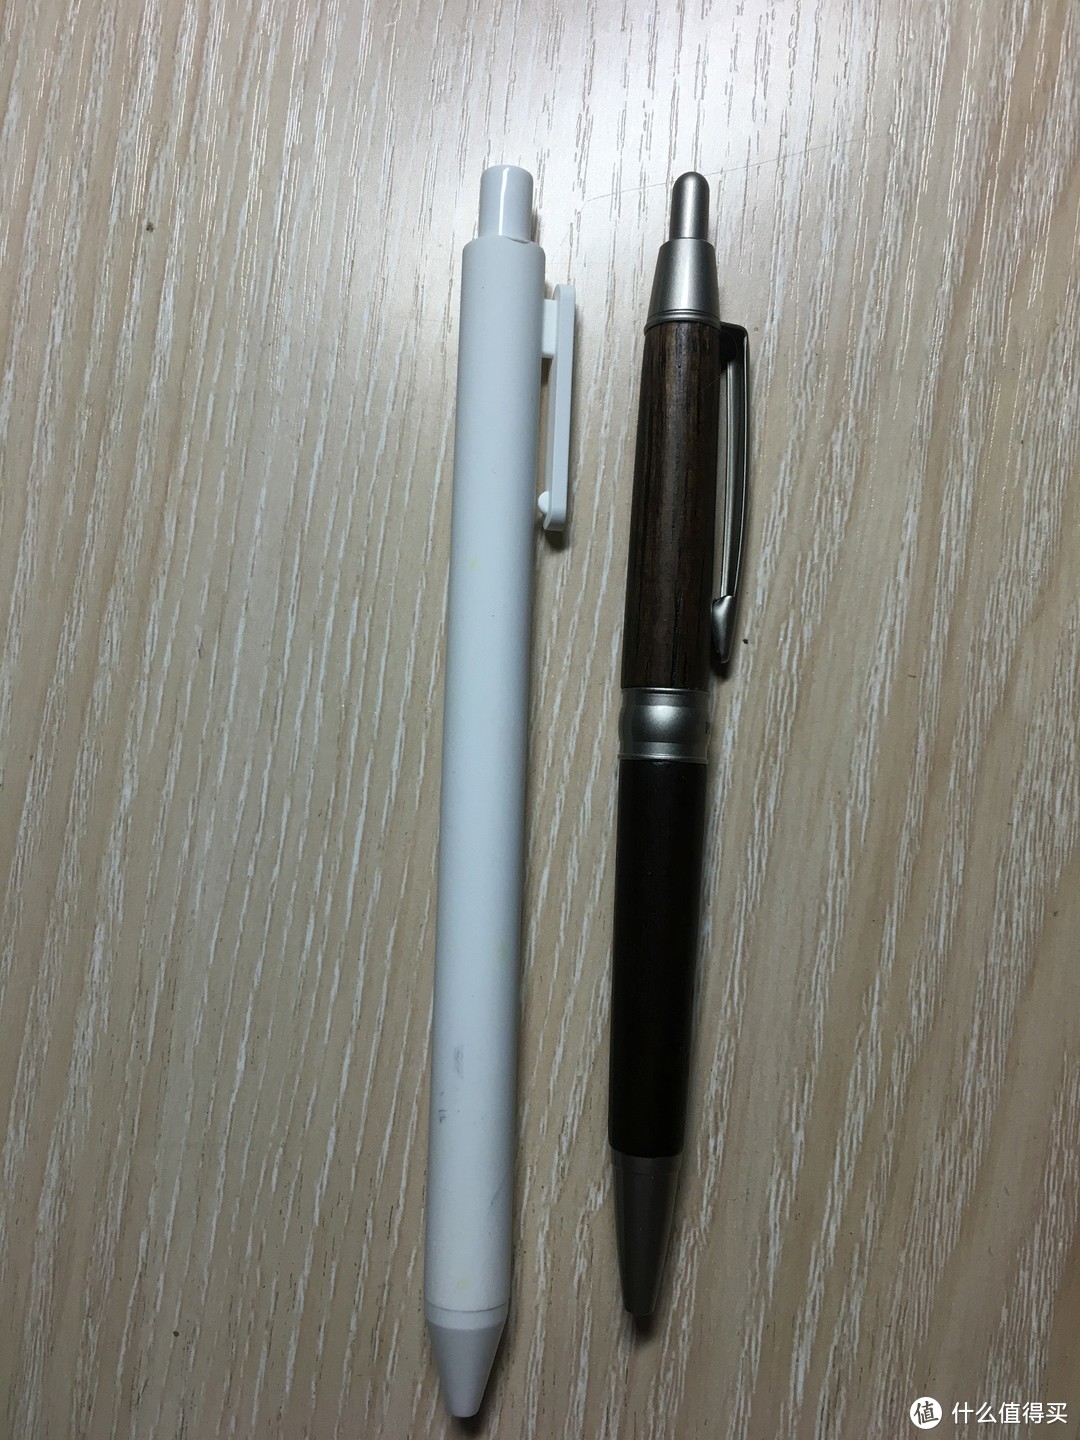 意料之外的好用-----KACO BALANCE博雅钢笔+ PURE书源 中性笔 套装评测